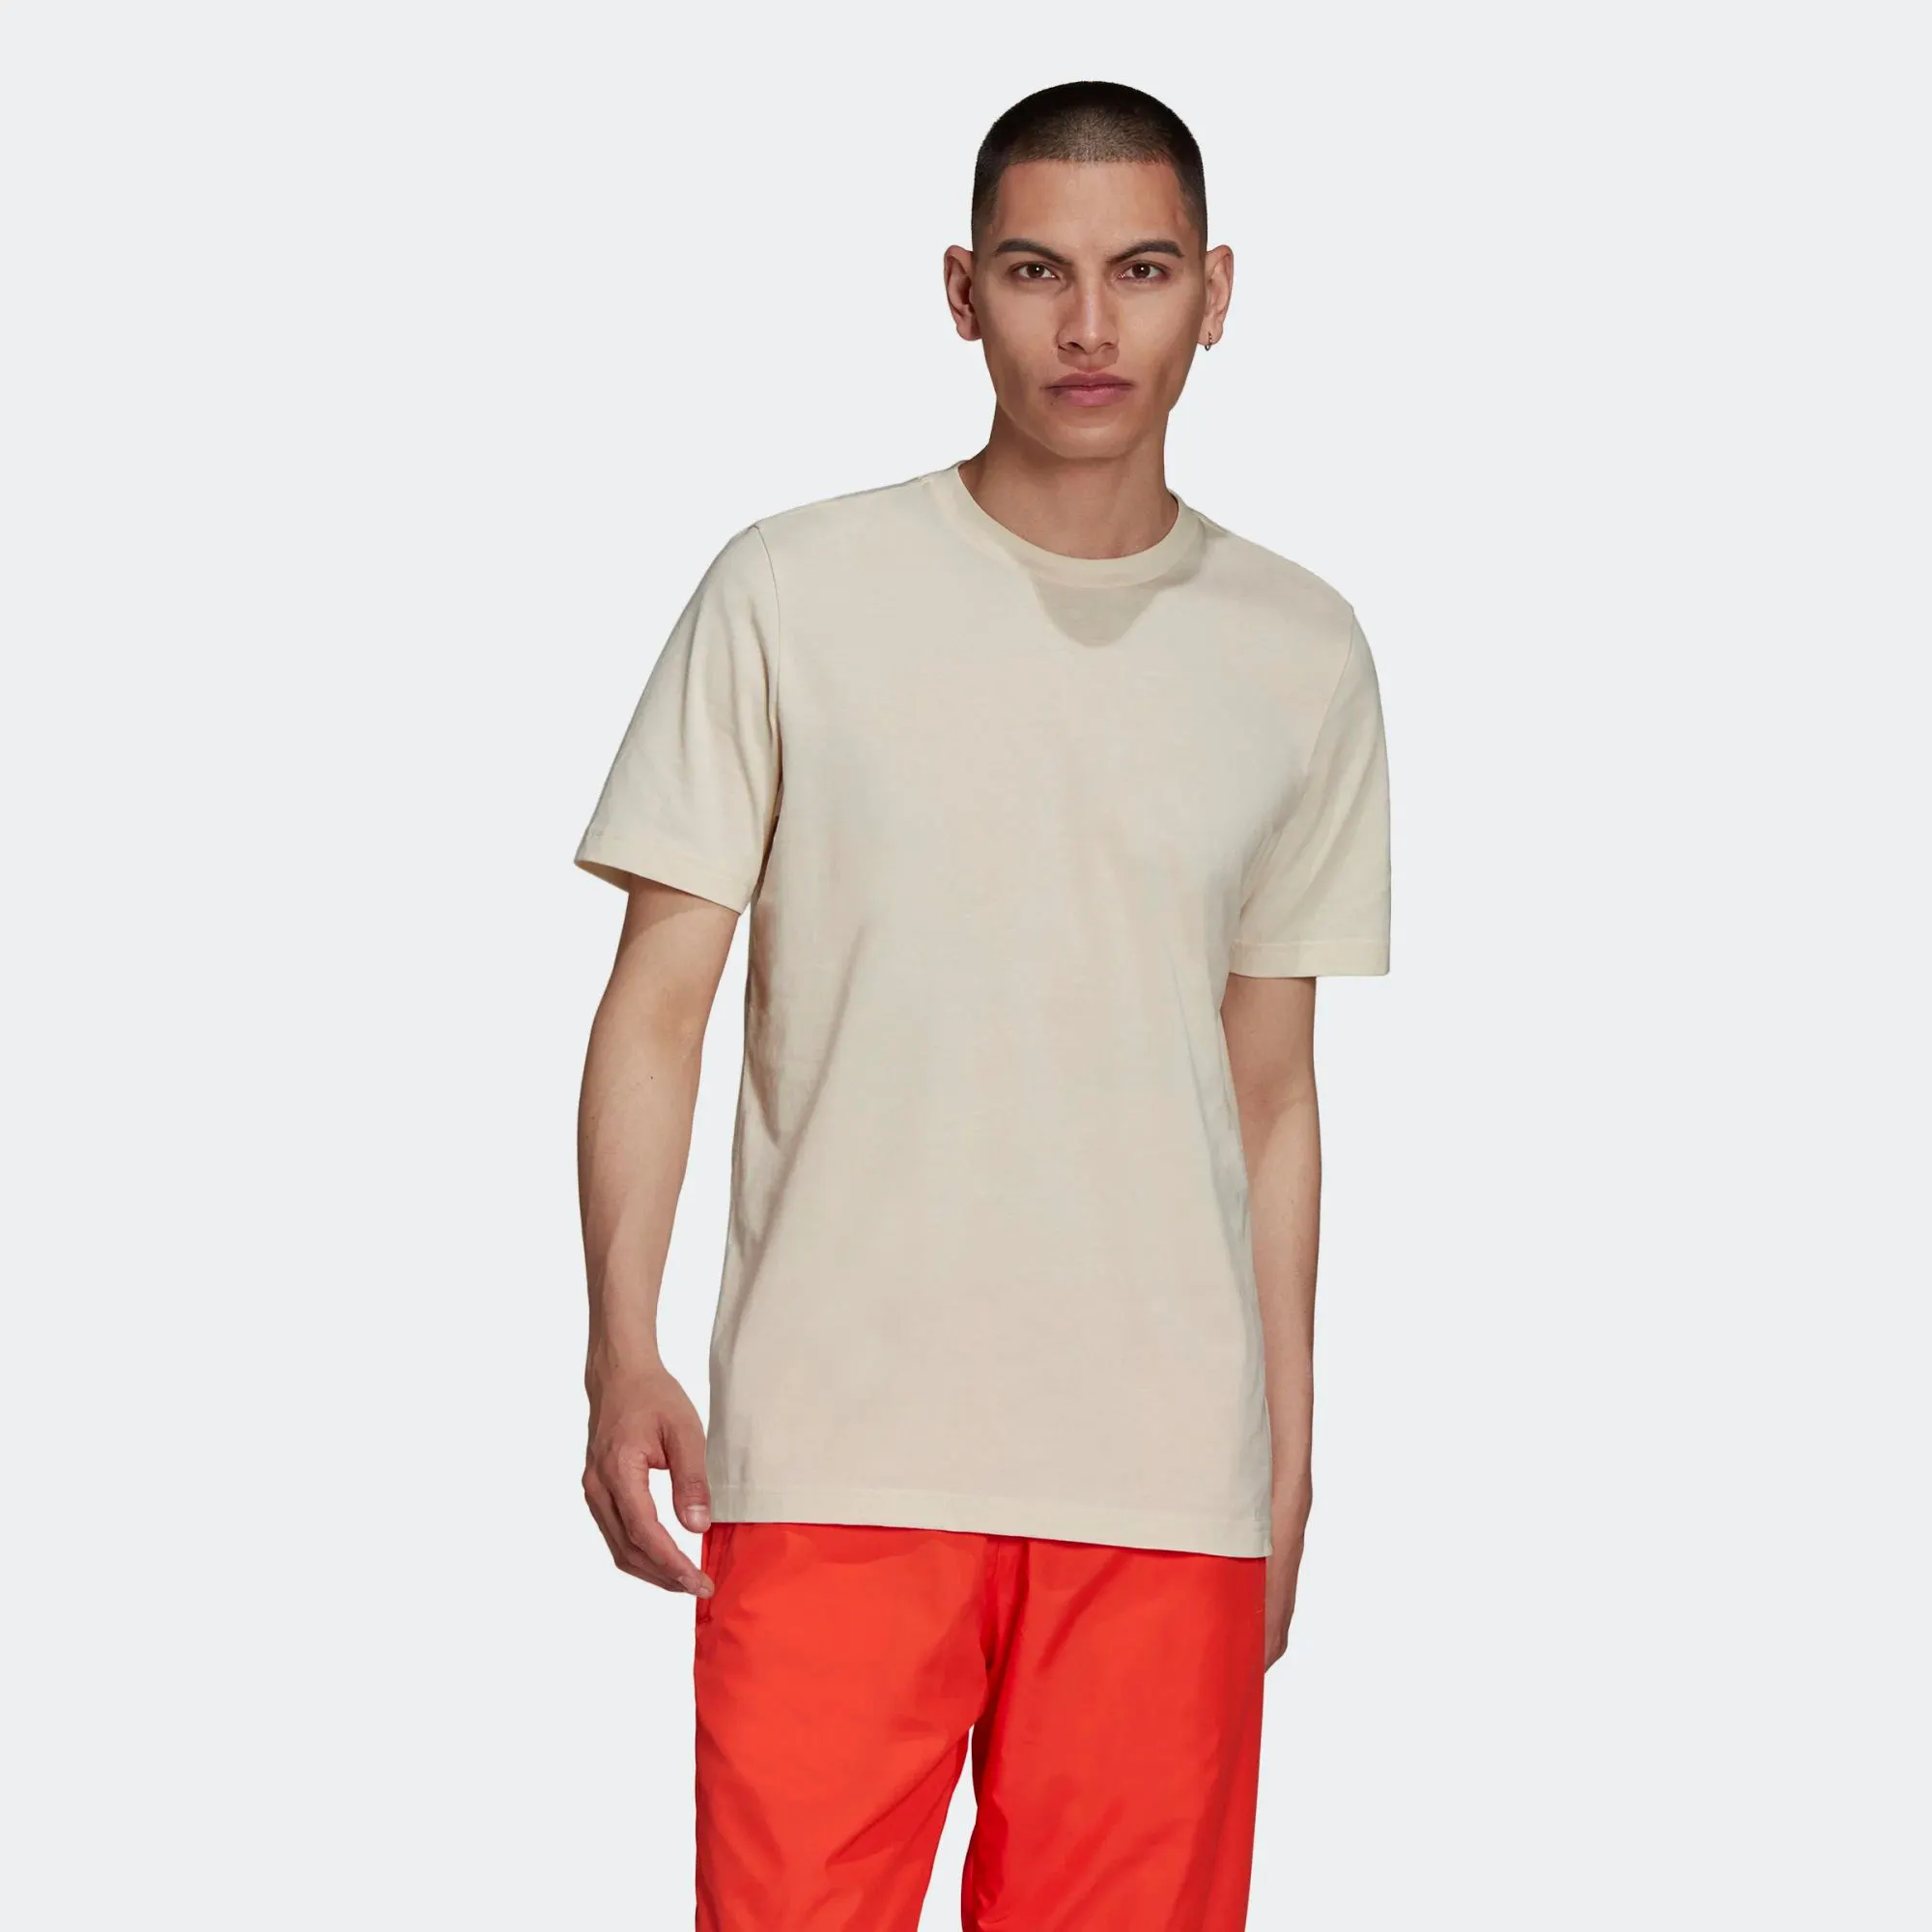 Camiseta de manga corta para hombre, camisa de cuello redondo acanalado, 100% algodón, color rojo vivo, essential